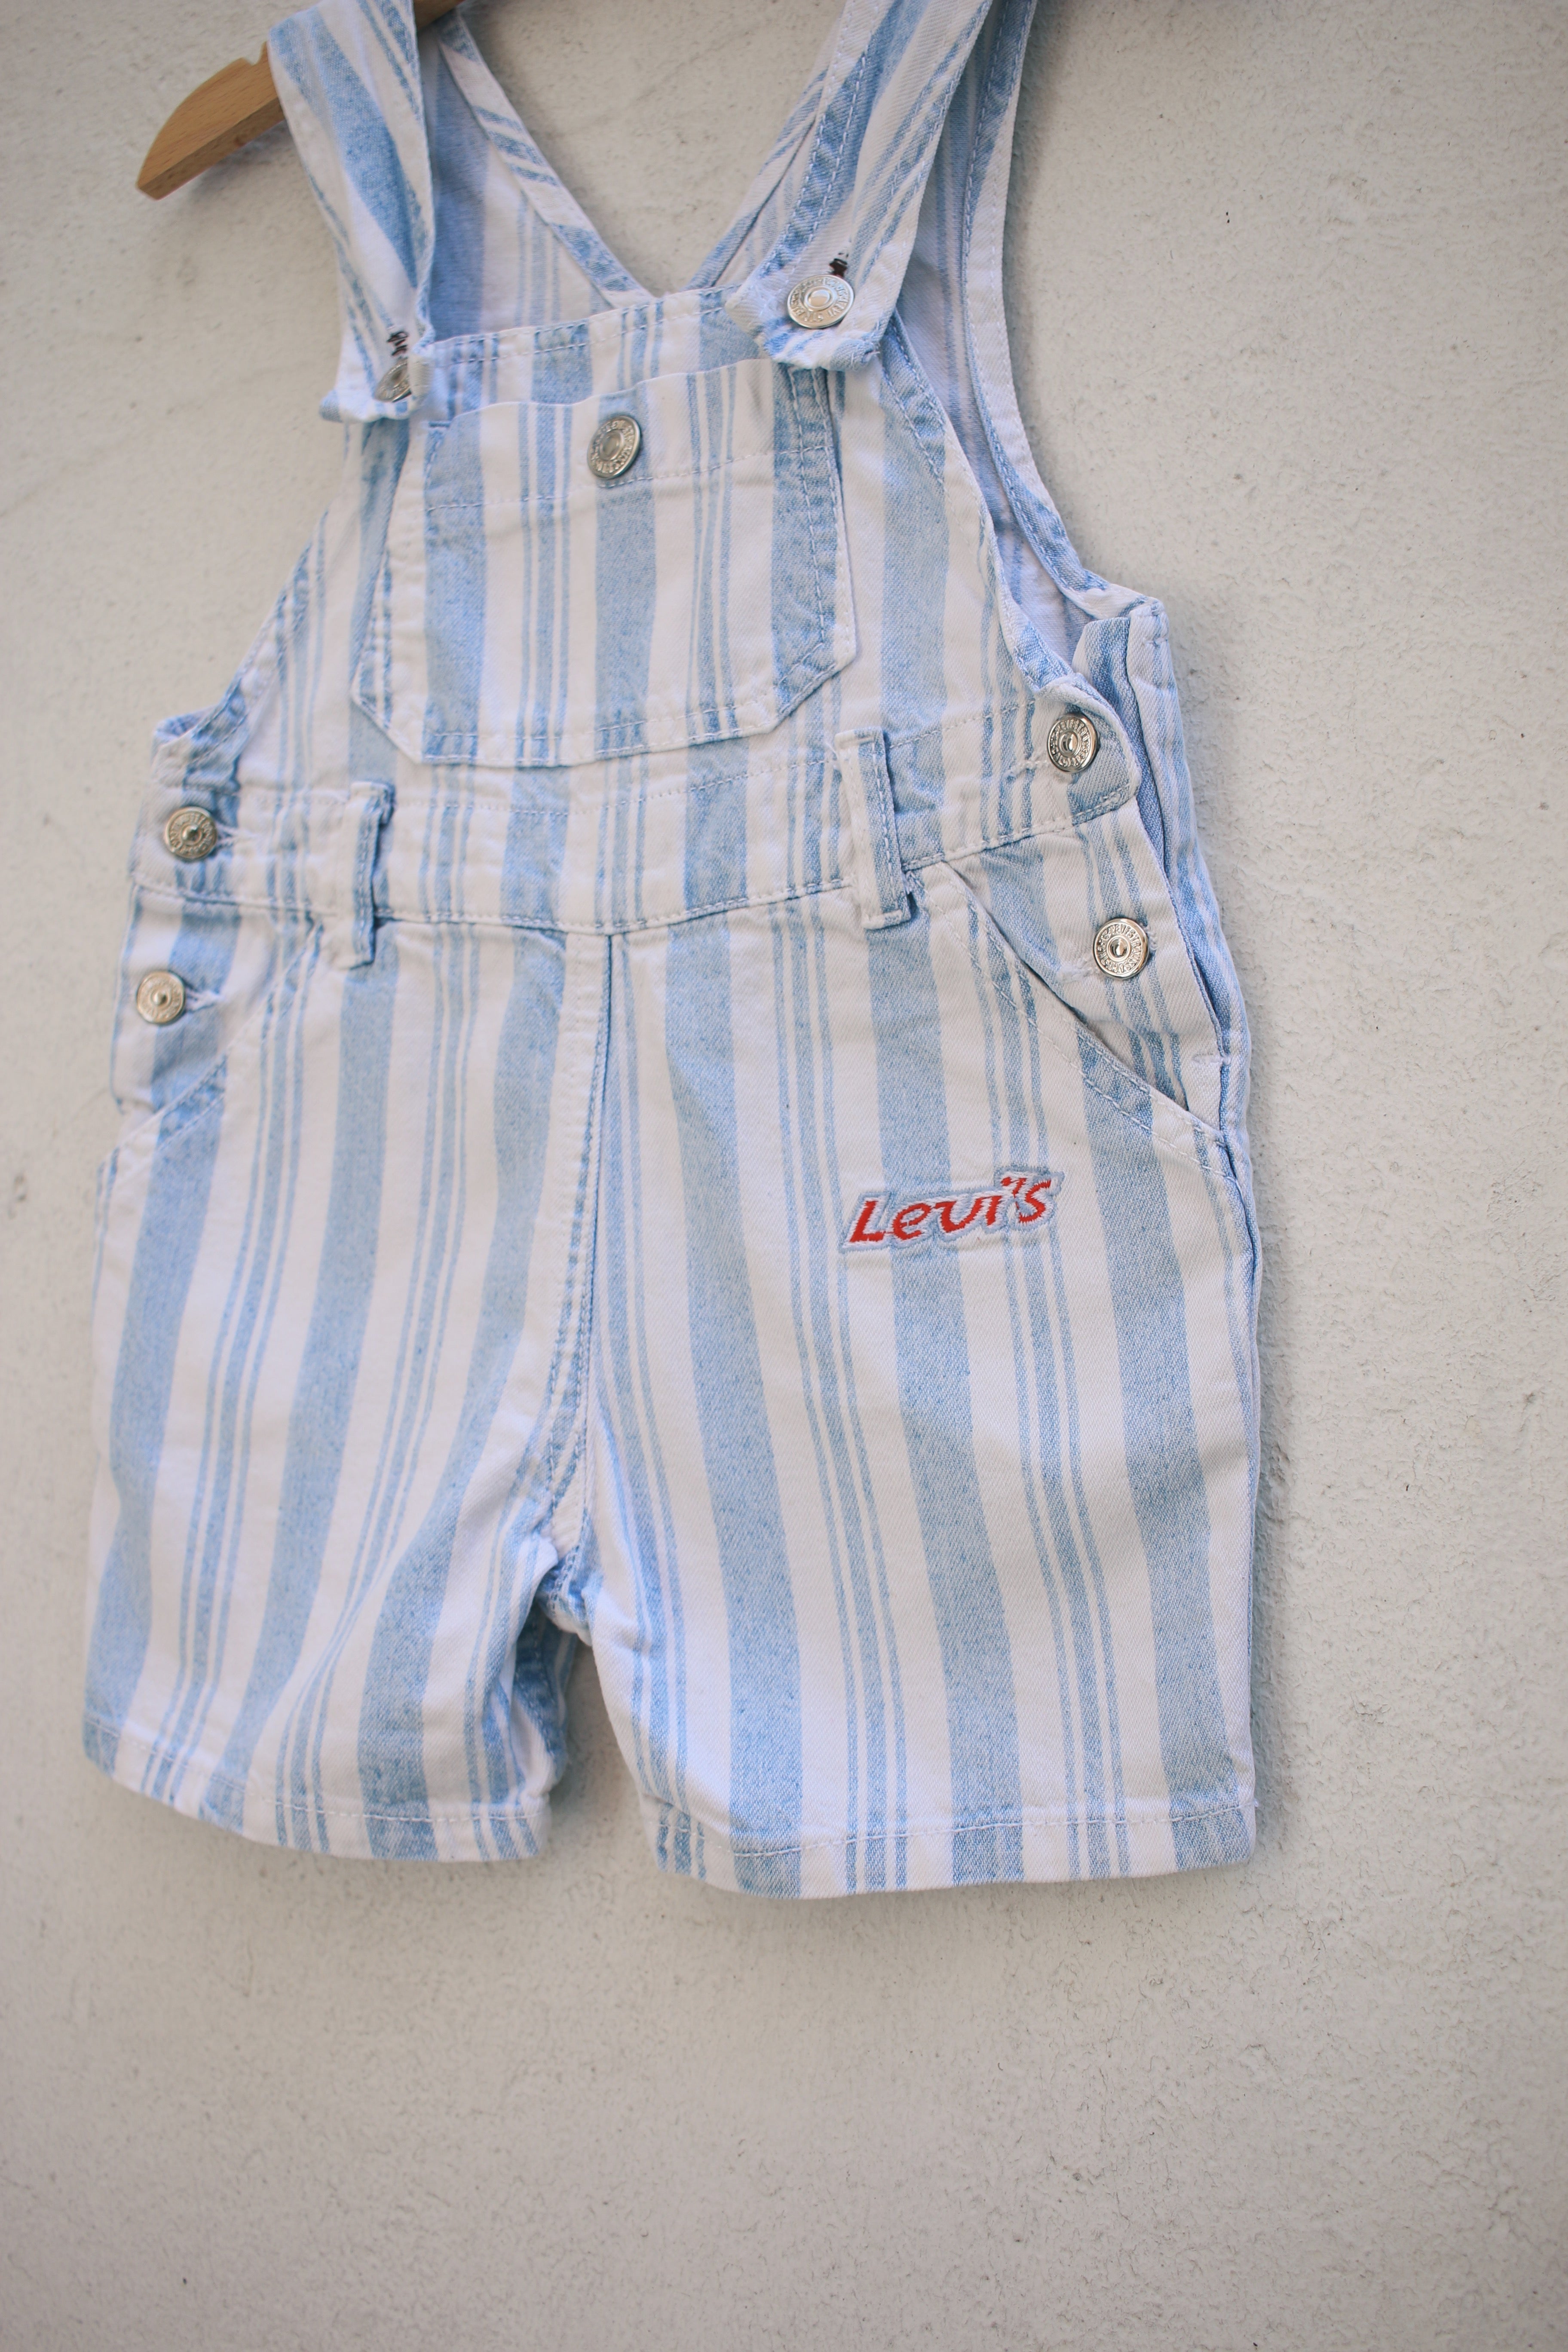 Vintage Levi's striped shortalls - size 6-12 months